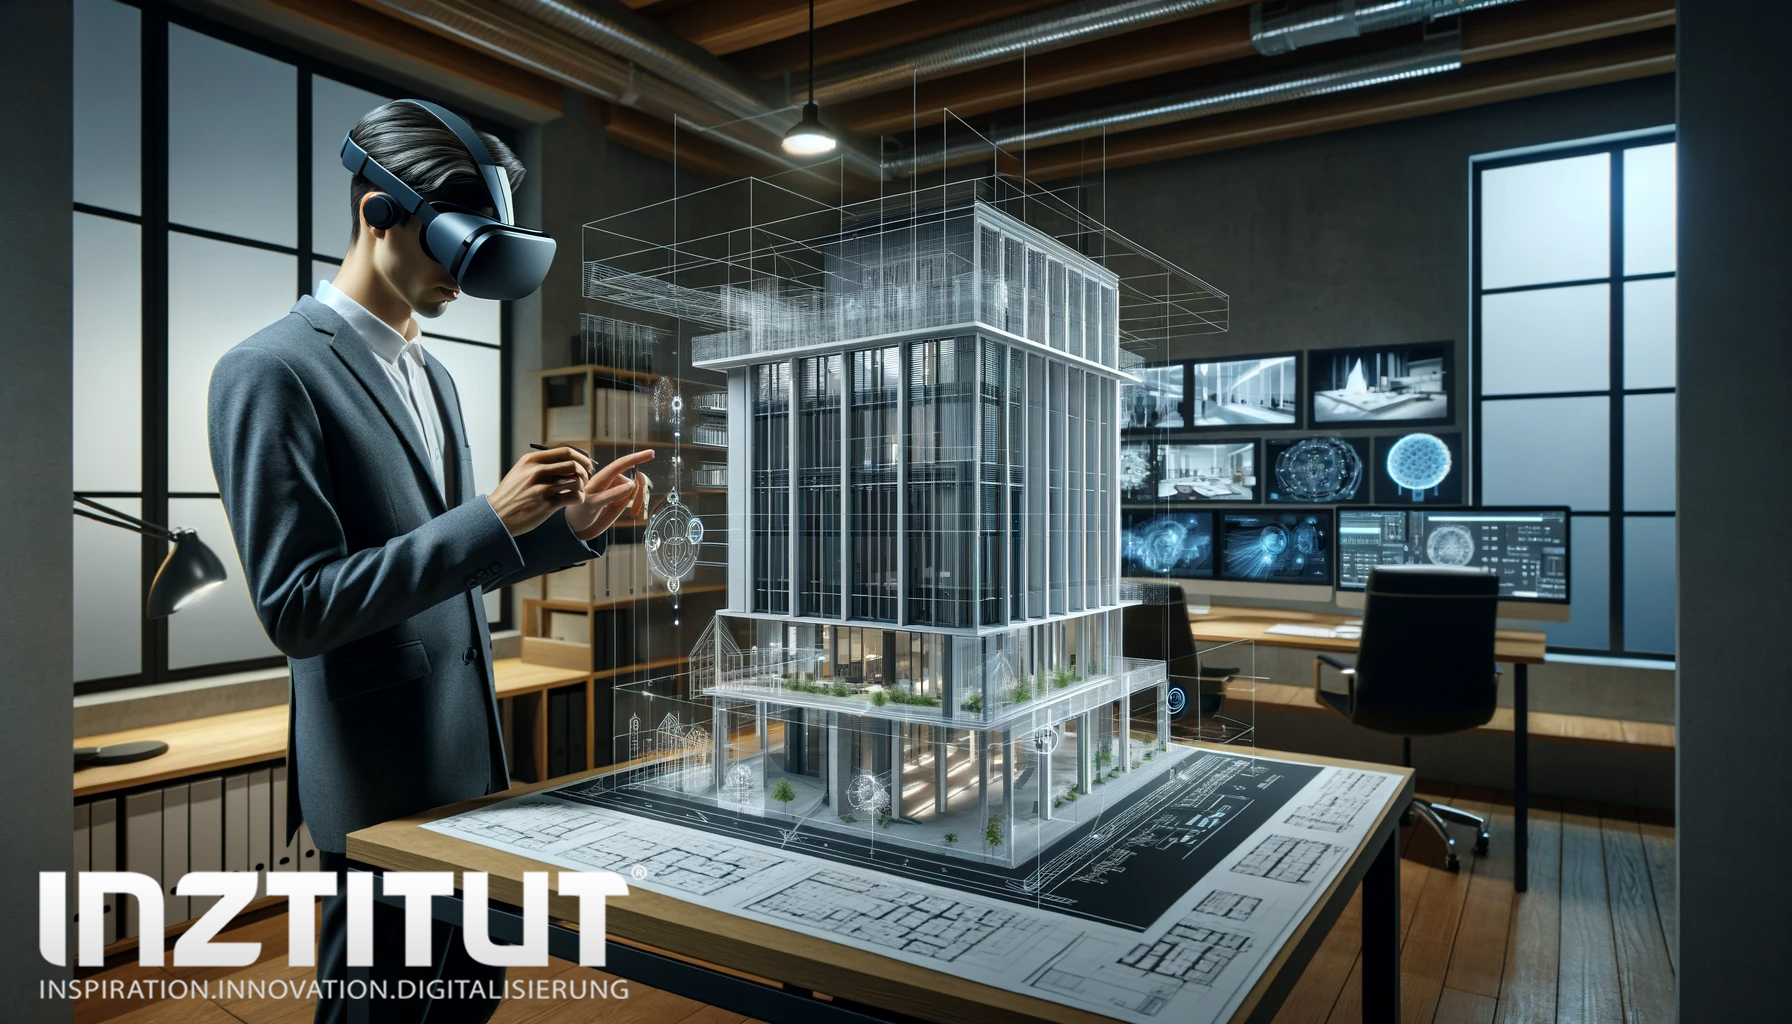 Virtuelle Immersion in der Architektur und im Ingenieurwesen - Unser Bild veranschaulicht die Rolle der virtuellen Immersion in der Architektur und im Ingenieurwesen. Es zeigt einen Architekten, der VR-Brillen trägt und mit einem virtuellen Modell eines Gebäudes interagiert. Die Szene findet in einem Büroumfeld statt und hebt hervor, wie immersive Technologie genutzt wird, um Bauprojekte und Ingenieurkonstruktionen zu visualisieren. Durch die Nutzung von VR wird es möglich, Architekturdesigns in einem dreidimensionalen Raum zu erleben und zu bewerten, bevor sie physisch umgesetzt werden. Die virtuelle Immersion in diesem Kontext erlaubt es dem Architekten, Aspekte wie Raumgestaltung, Struktur und Ästhetik in einer realistischen und interaktiven Weise zu erkunden. Dieses Bild demonstriert eindrucksvoll, wie immersive Technologien das traditionelle Design- und Planungsverfahren in der Architektur und im Ingenieurwesen revolutionieren, indem sie eine tiefere und intuitive Verbindung zum Entwurf ermöglichen.